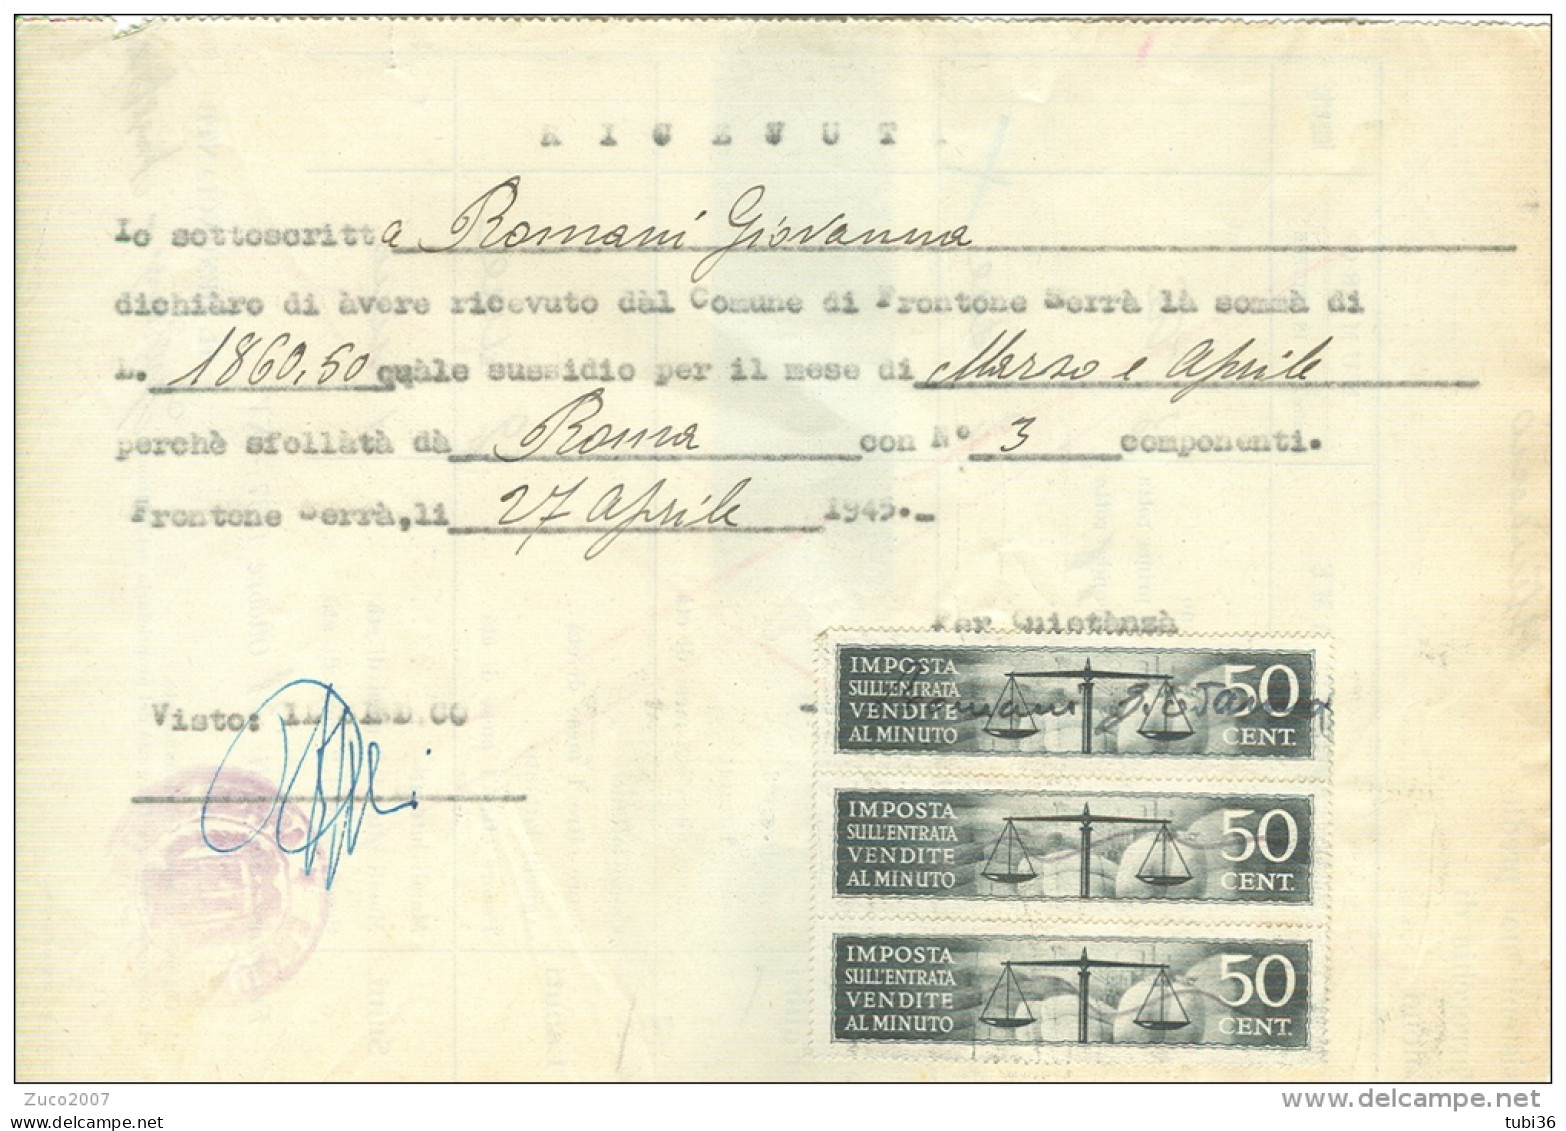 COMUNE DI FRONTONE SERRA,PESARO,  IMPOSTA ENTRATA , VENDITE AL MINUTO, Cent:50 X 3, MARCHE  SU RICEVUTA SUSSIDIO, 1945, - Steuermarken